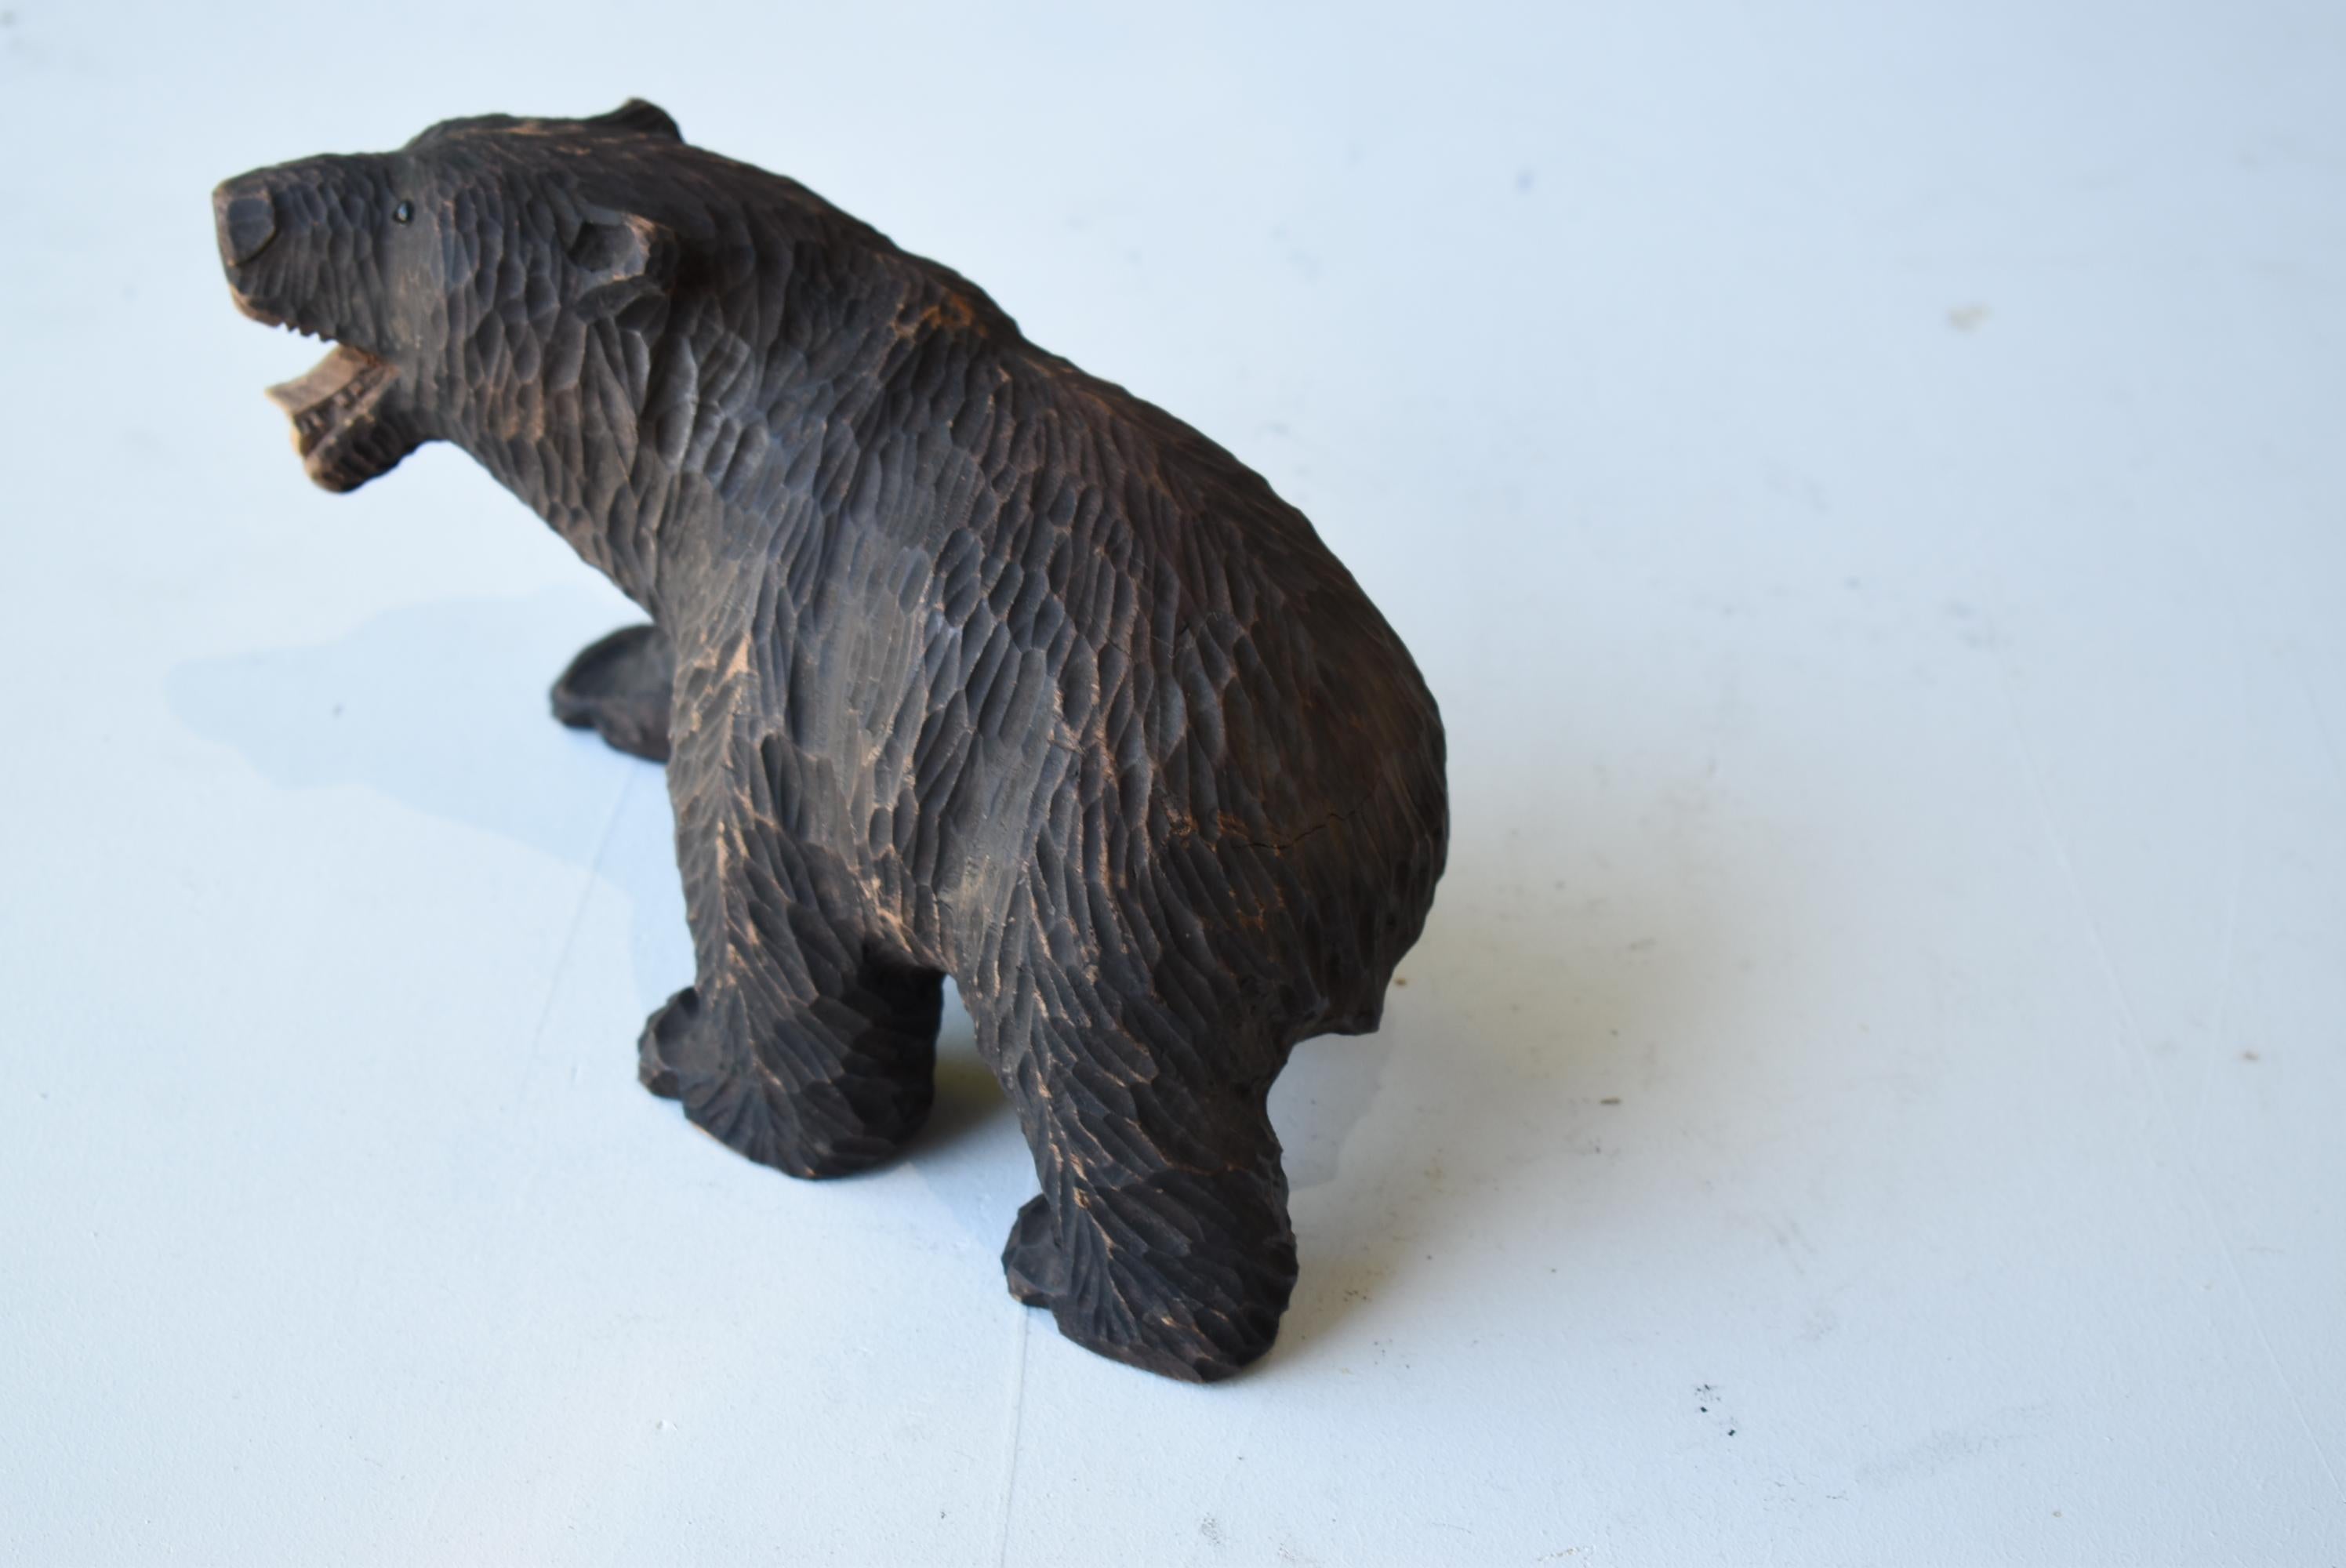 Japanese Old Wood Carving Bear 1930s-1950s/Vintage Figurine Sculpture Folk Art For Sale 2